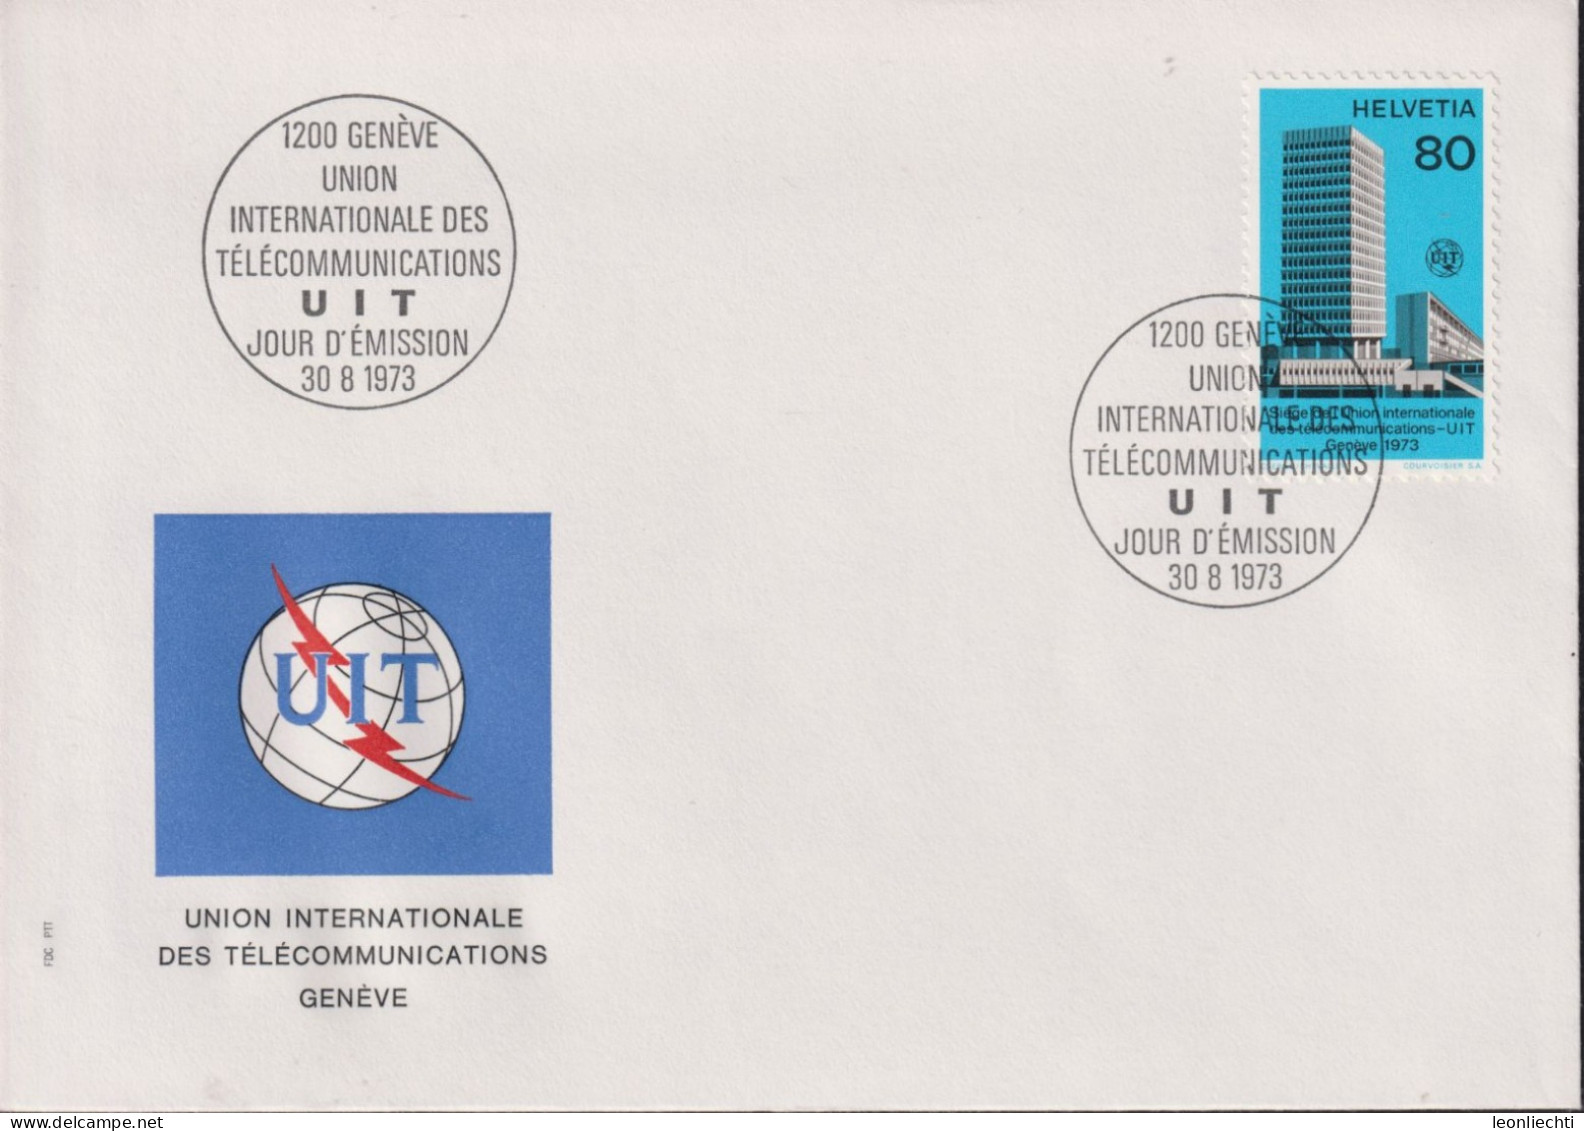 1976 Schweiz FDC, UIT, Zum:UIT 10, Mi:UIT 10,ⵙ1200 GENÈVE UIT - Dienstzegels